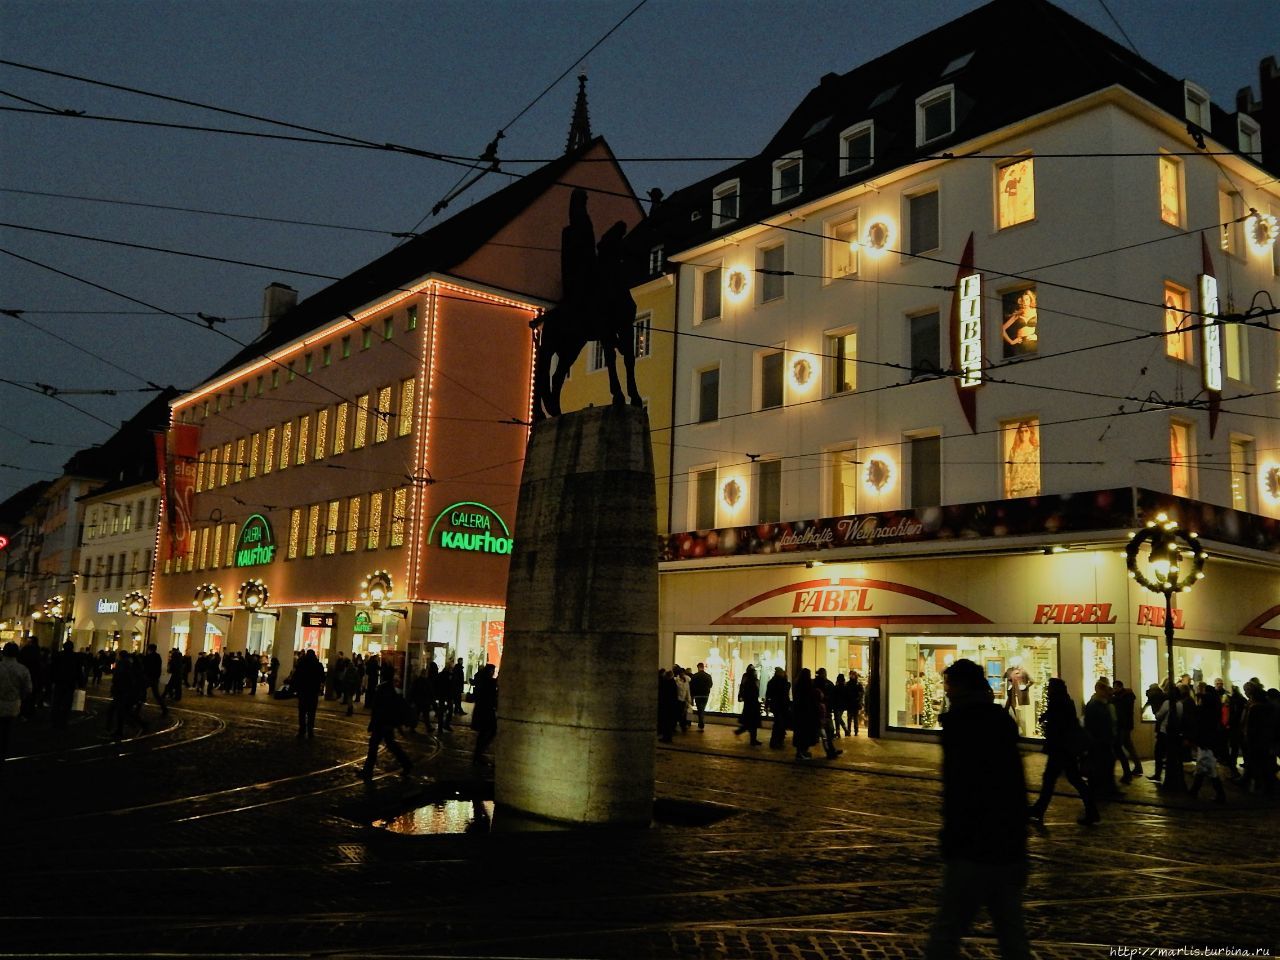 Вечером в историческом центре Фрайбурга Фрайбург-им-Брайсгау, Германия